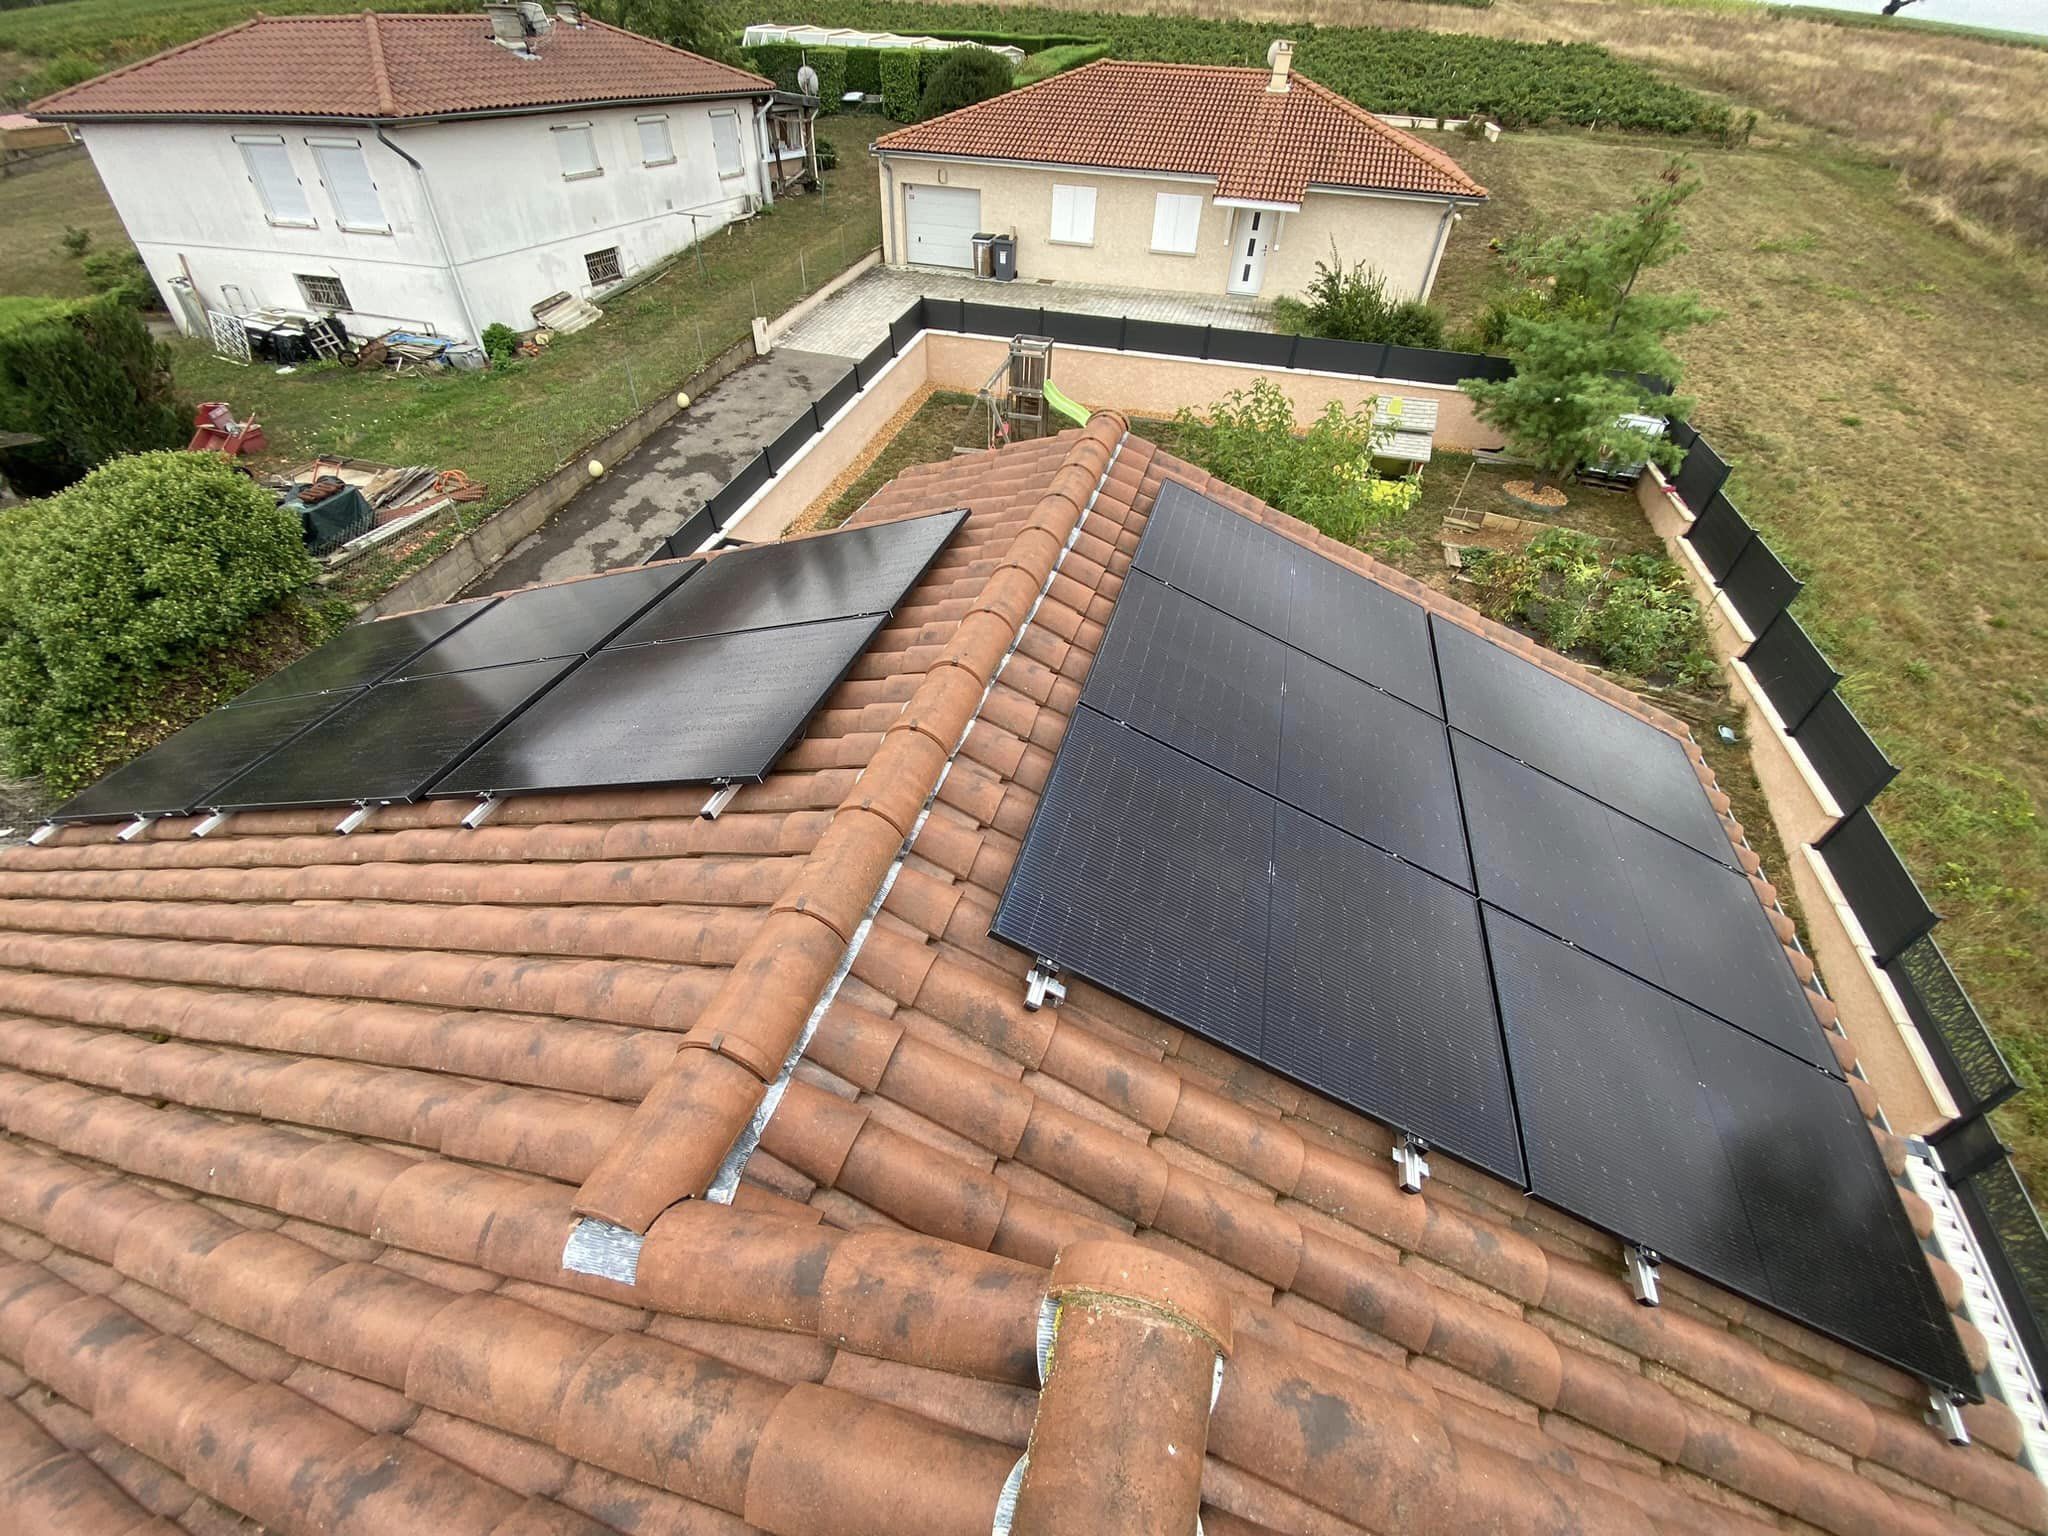 Photographie du toit d'une maison à Crêches-sur-Saône (71) où Performances Renouvelables a installé une série de panneaux photovoltaïques de la marque Dualsun